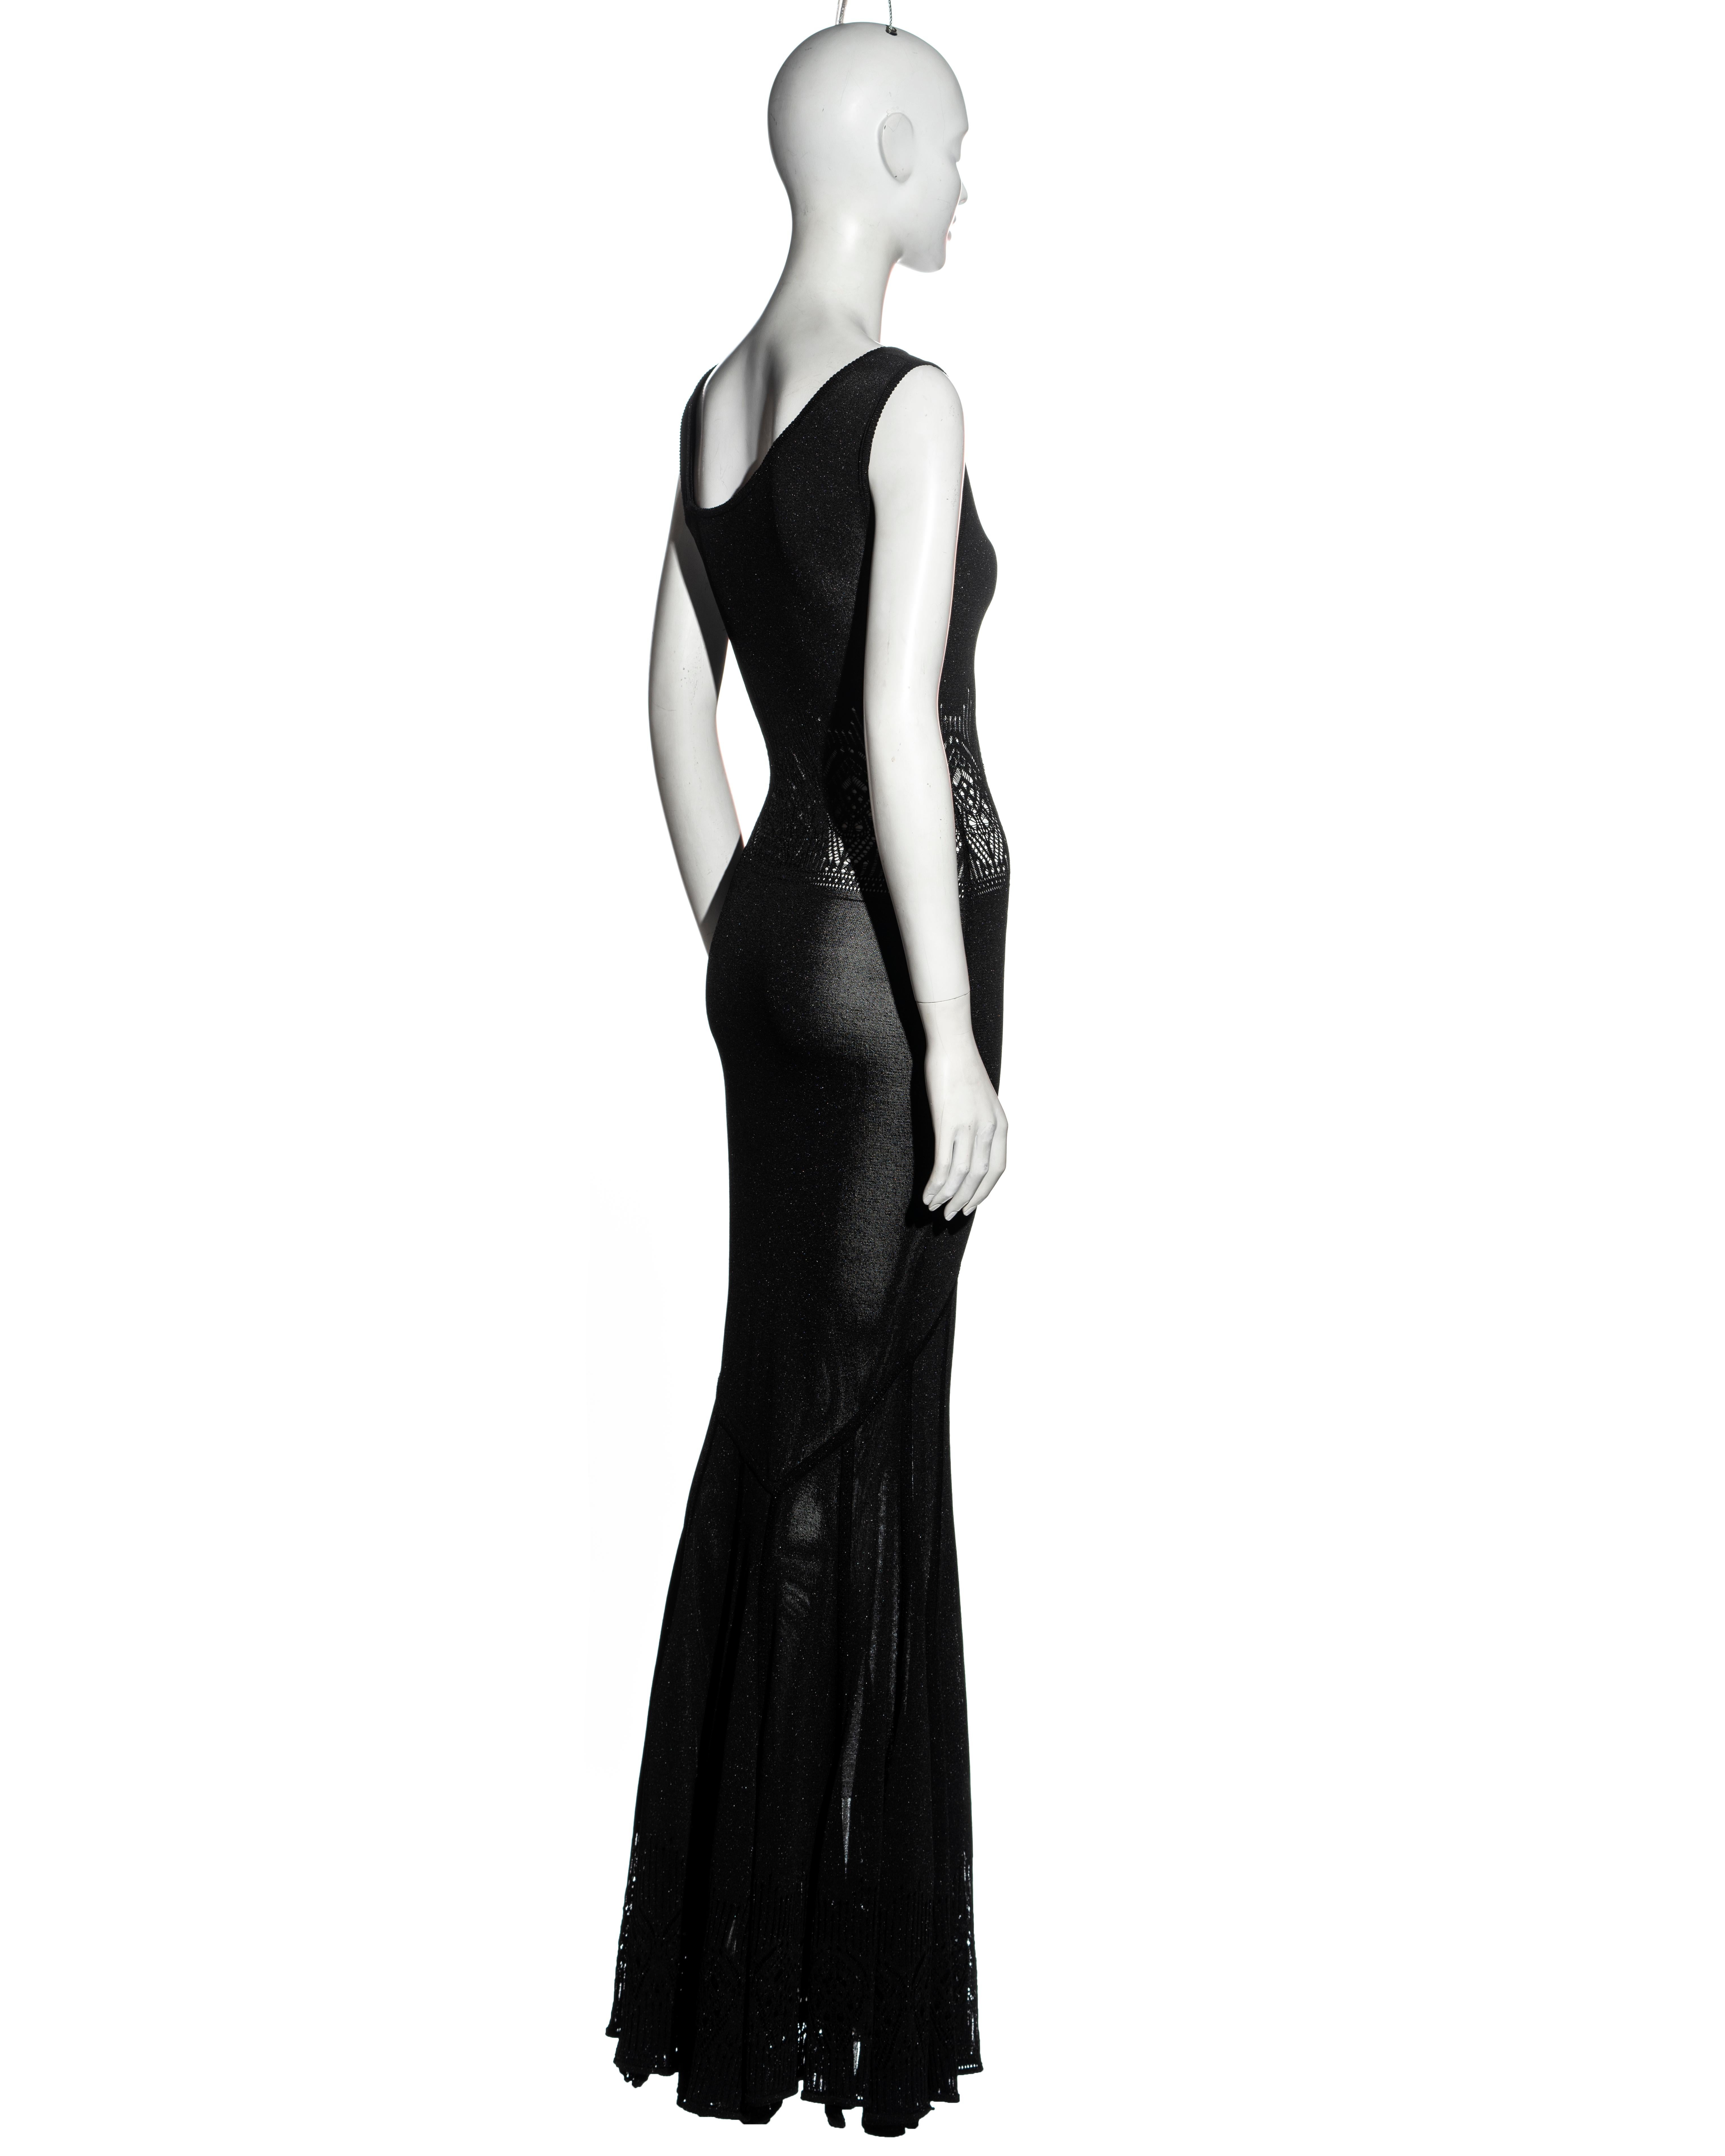 Women's John Galliano black lurex bias cut floor-length evening dress, ss 2000